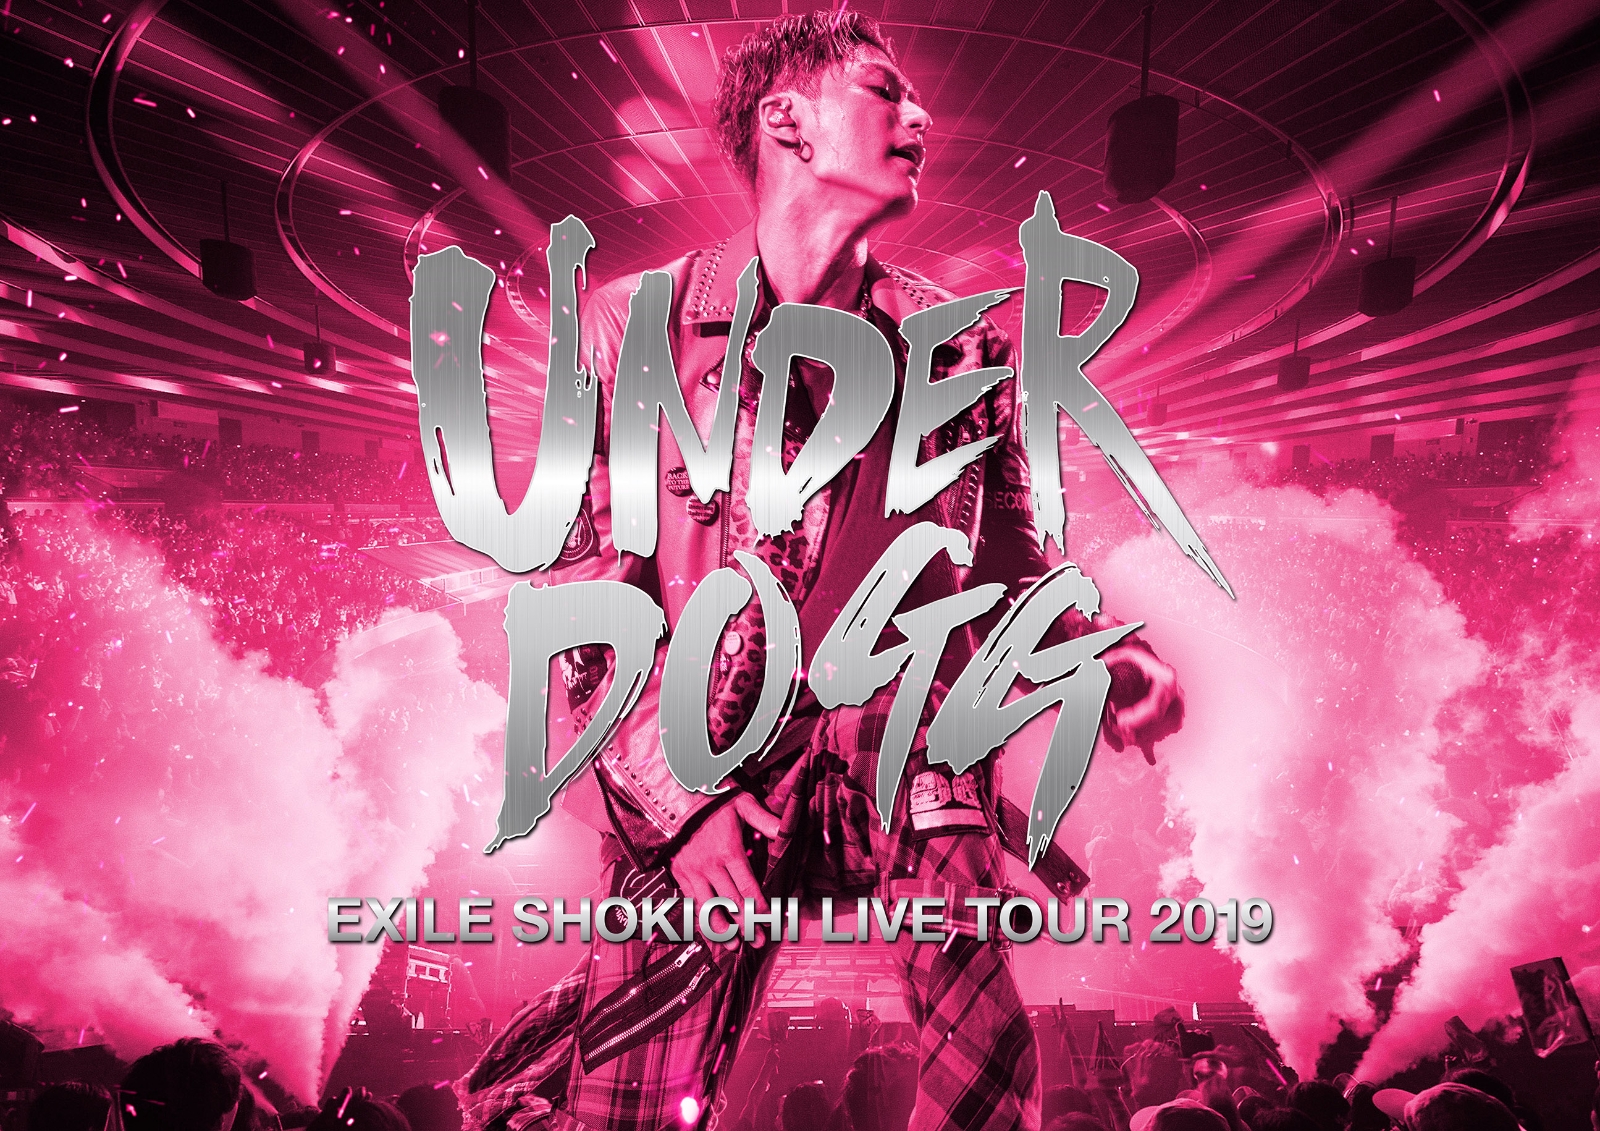 EXILE SHOKICHI LIVE TOUR 2019 UNDERDOGG | EXILE TRIBE Wiki | Fandom